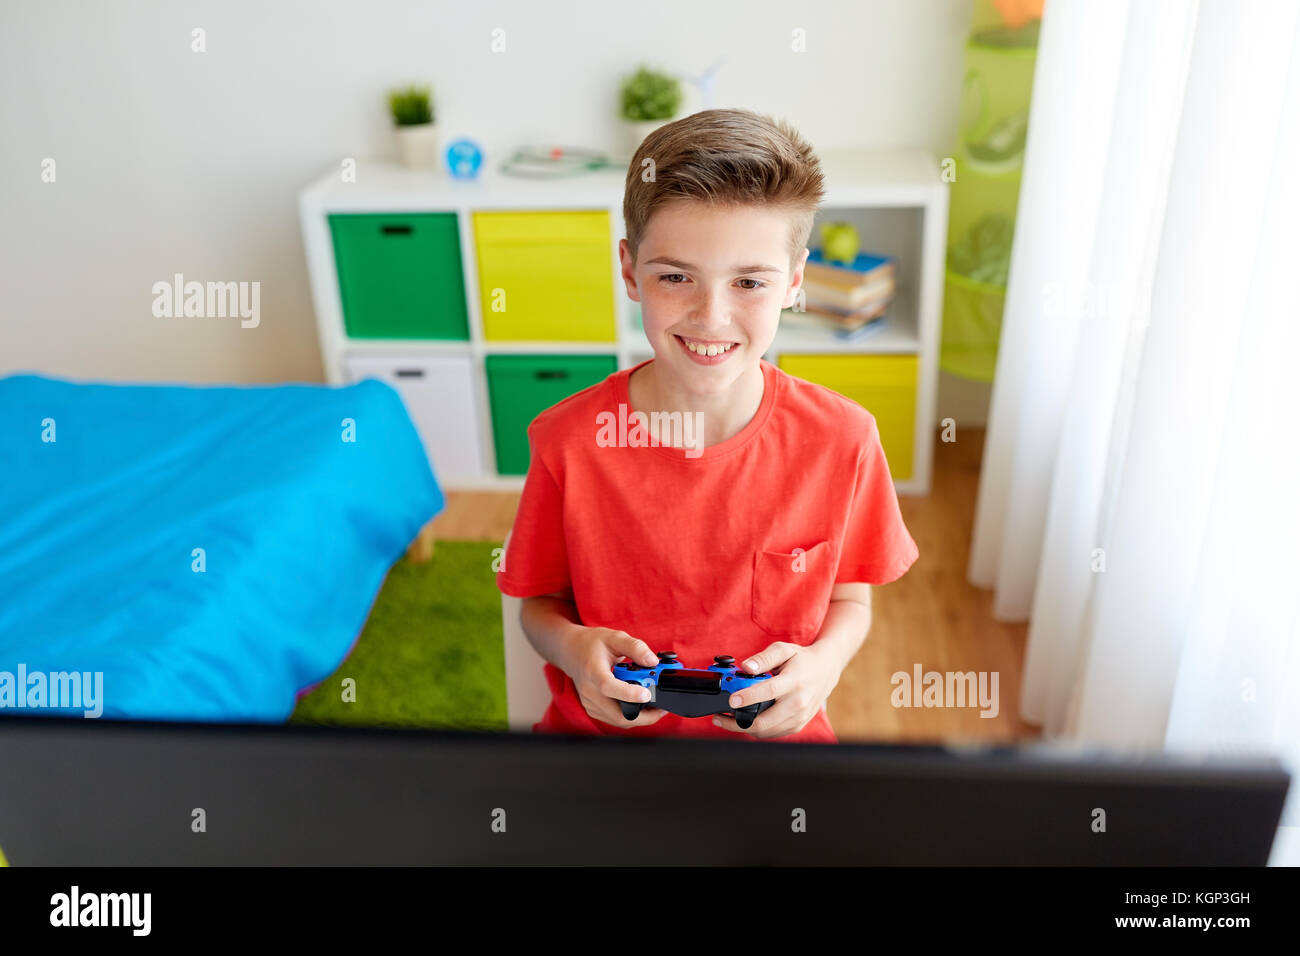 Junge mit Gamepad spielen Video Game auf dem Computer Stockfoto